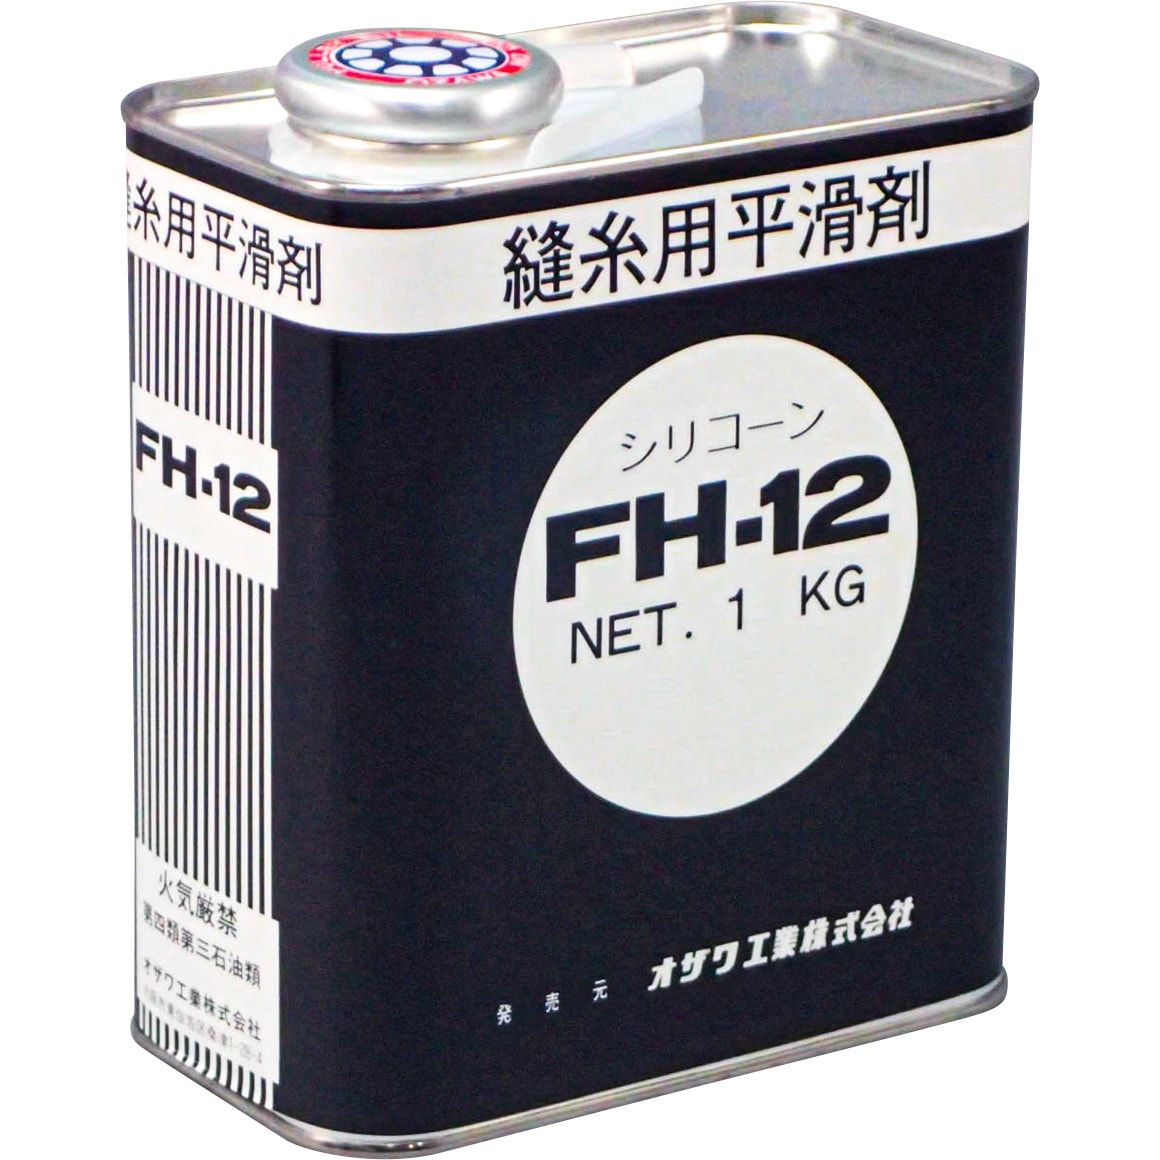 シリコンオイルFH-12